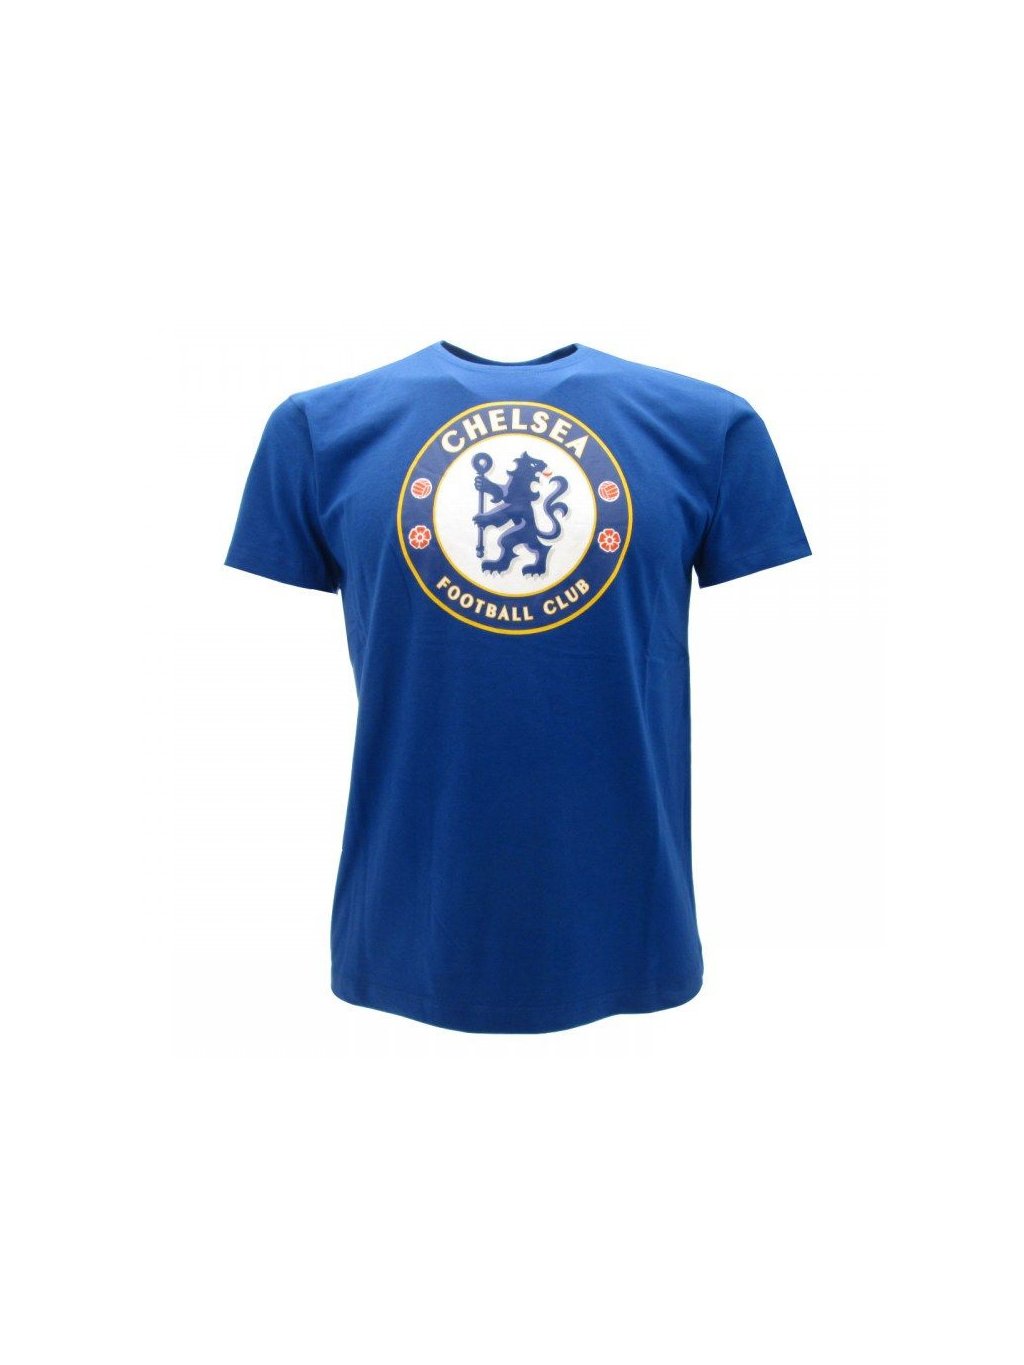 Dětské tričko CHELSEA FC Basic blue